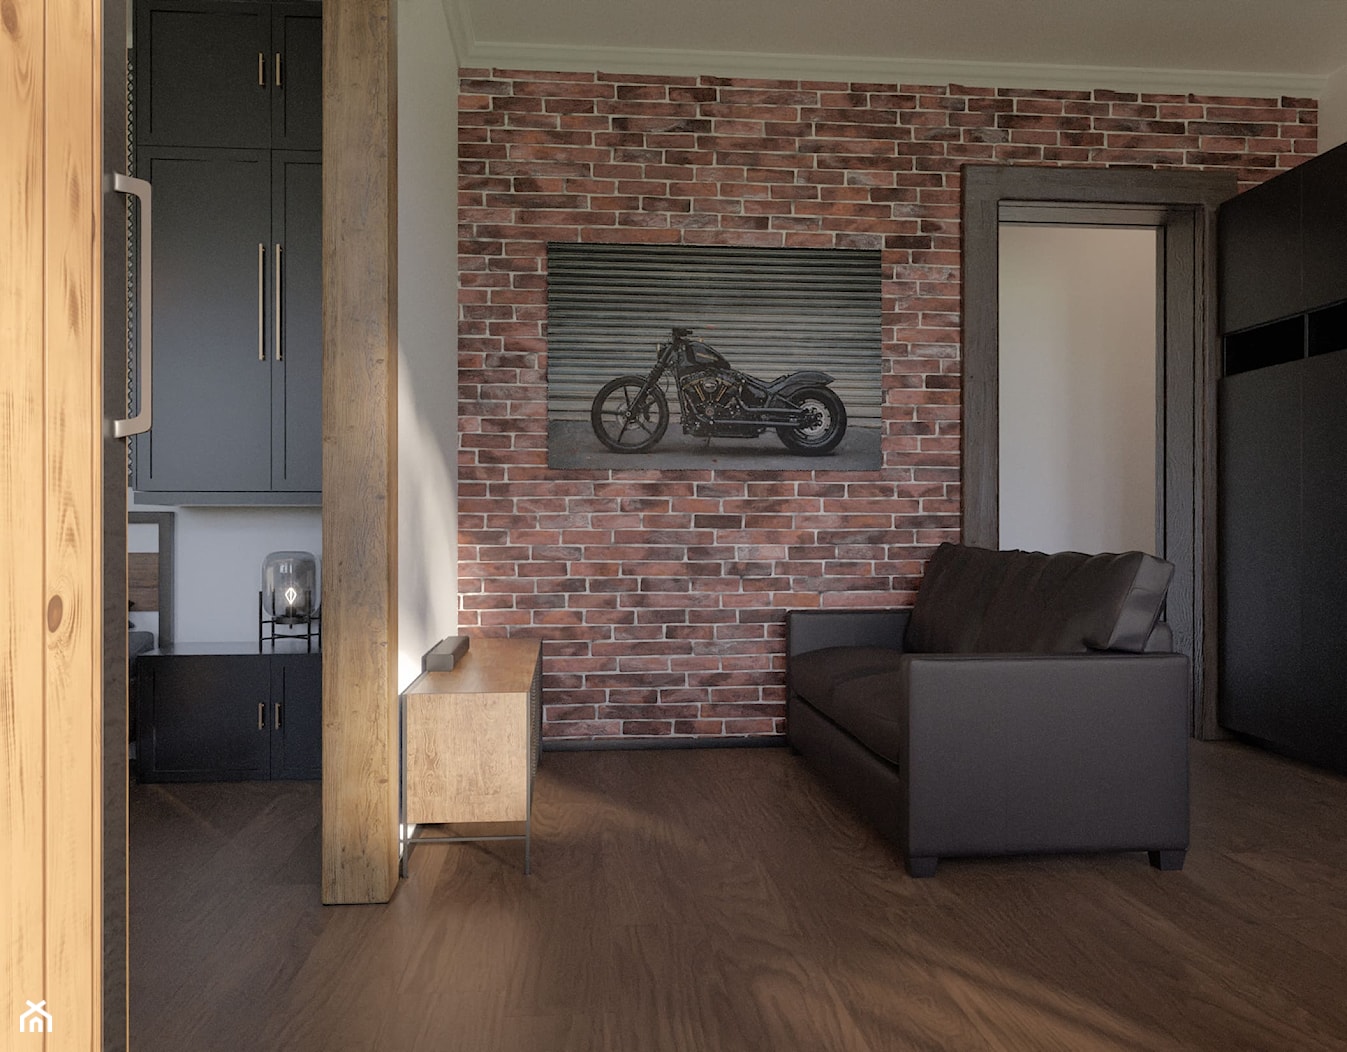 Salon w stylu industrialnym z cegłą na ścianie - zdjęcie od Holi Home - Homebook